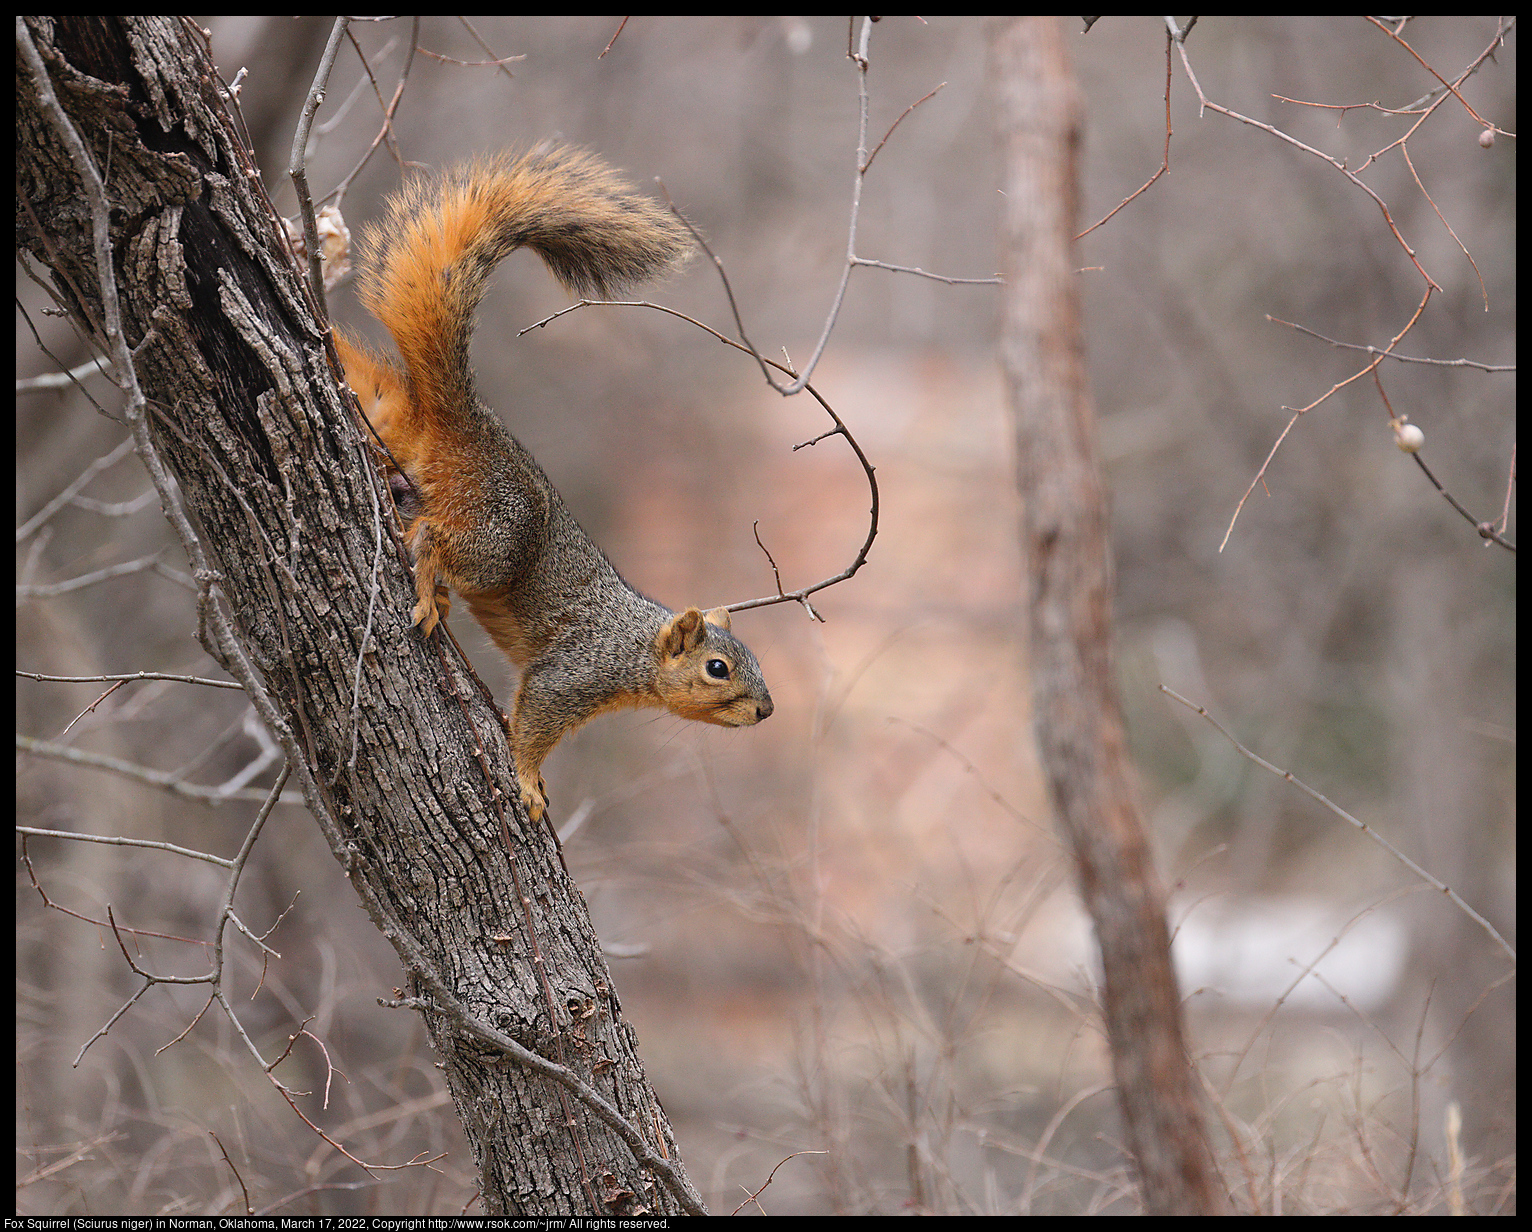 Fox Squirrel (Sciurus niger) in Norman, Oklahoma, March 17, 2022